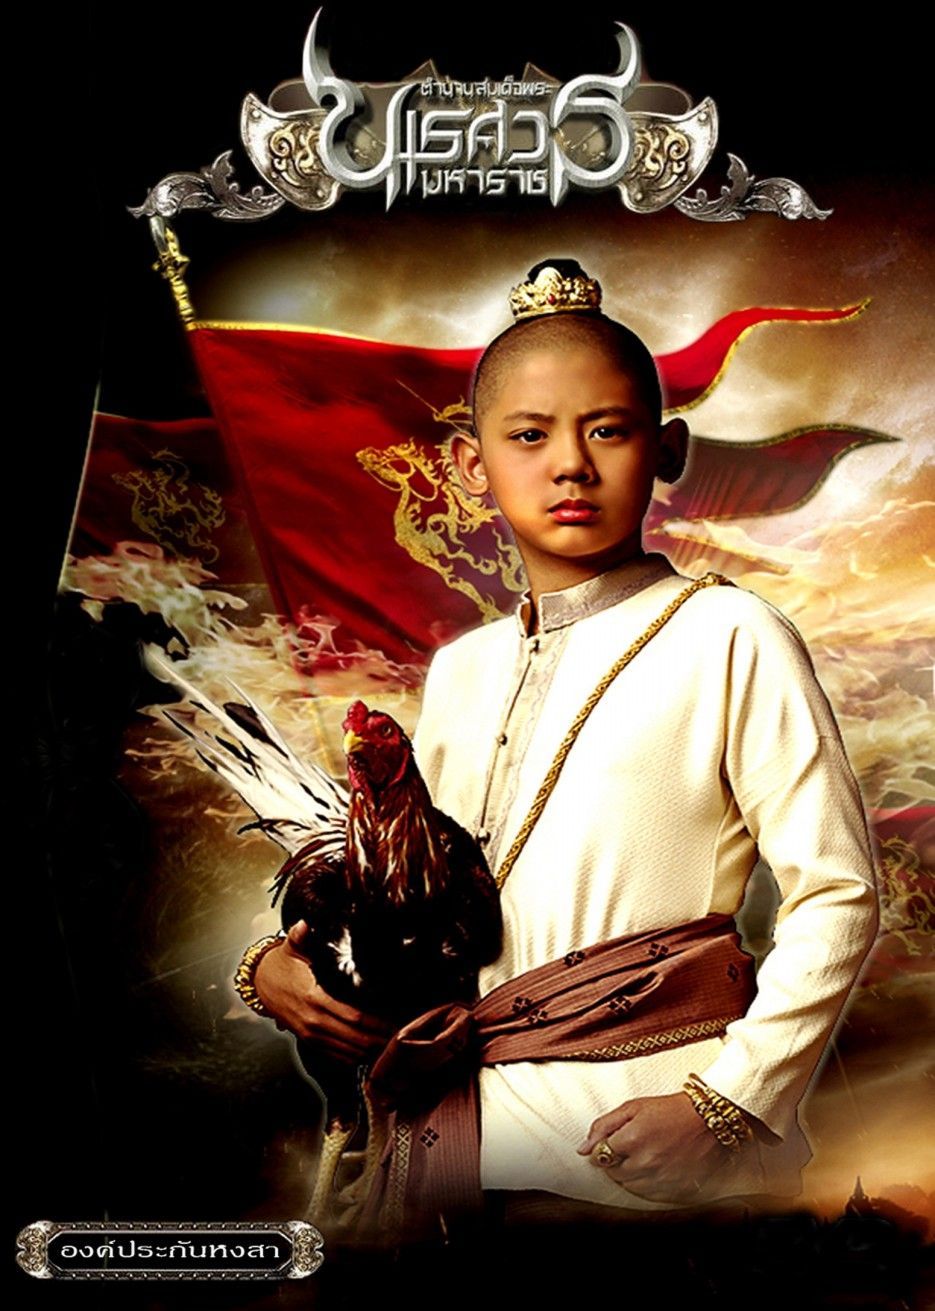 ดูหนังออนไลน์ฟรี King Naresuan 1 (2007) ตํานานสมเด็จพระนเรศวรมหาราช ภาค 1 องค์ประกันหงสา หนังเต็มเรื่อง หนังมาสเตอร์ ดูหนังHD ดูหนังออนไลน์ ดูหนังใหม่